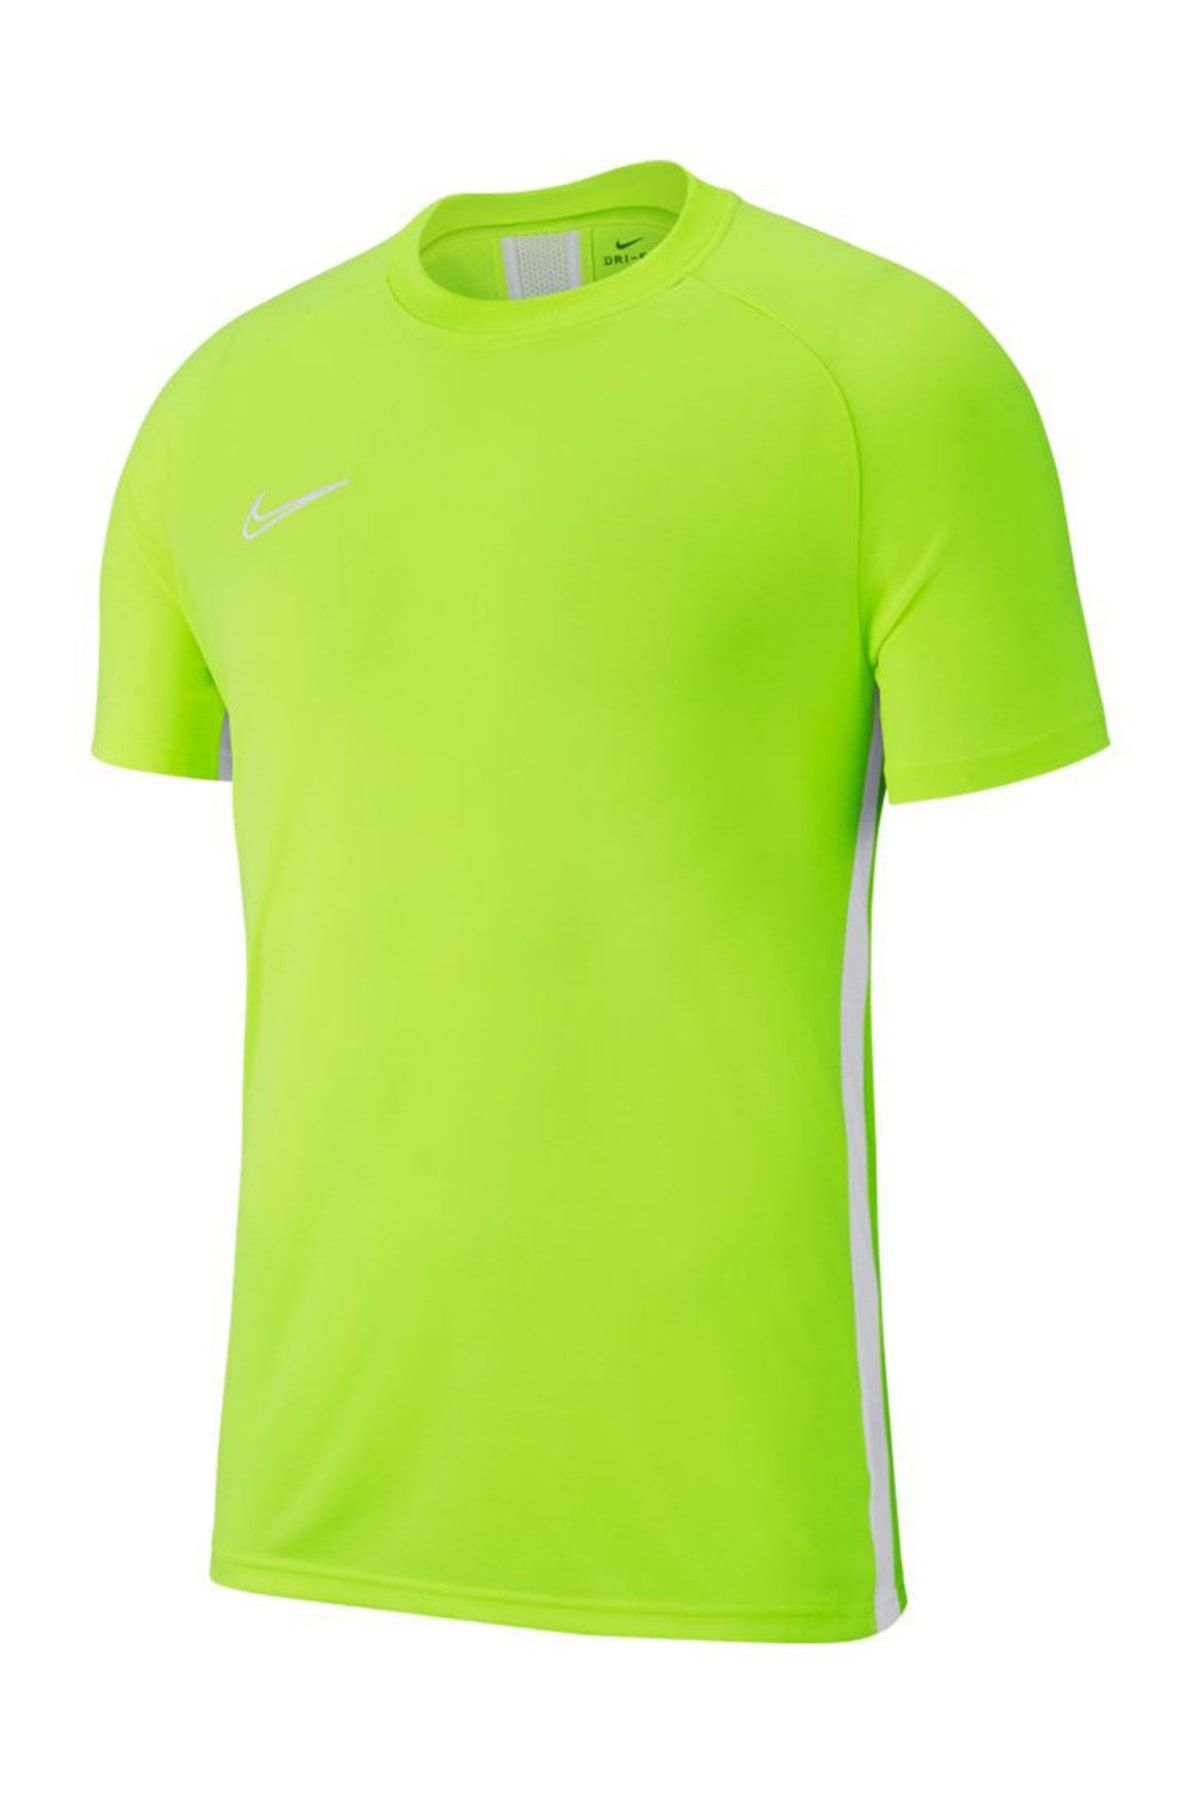 Nike Erkek T-Shirt - Training Top - Aj9088-702